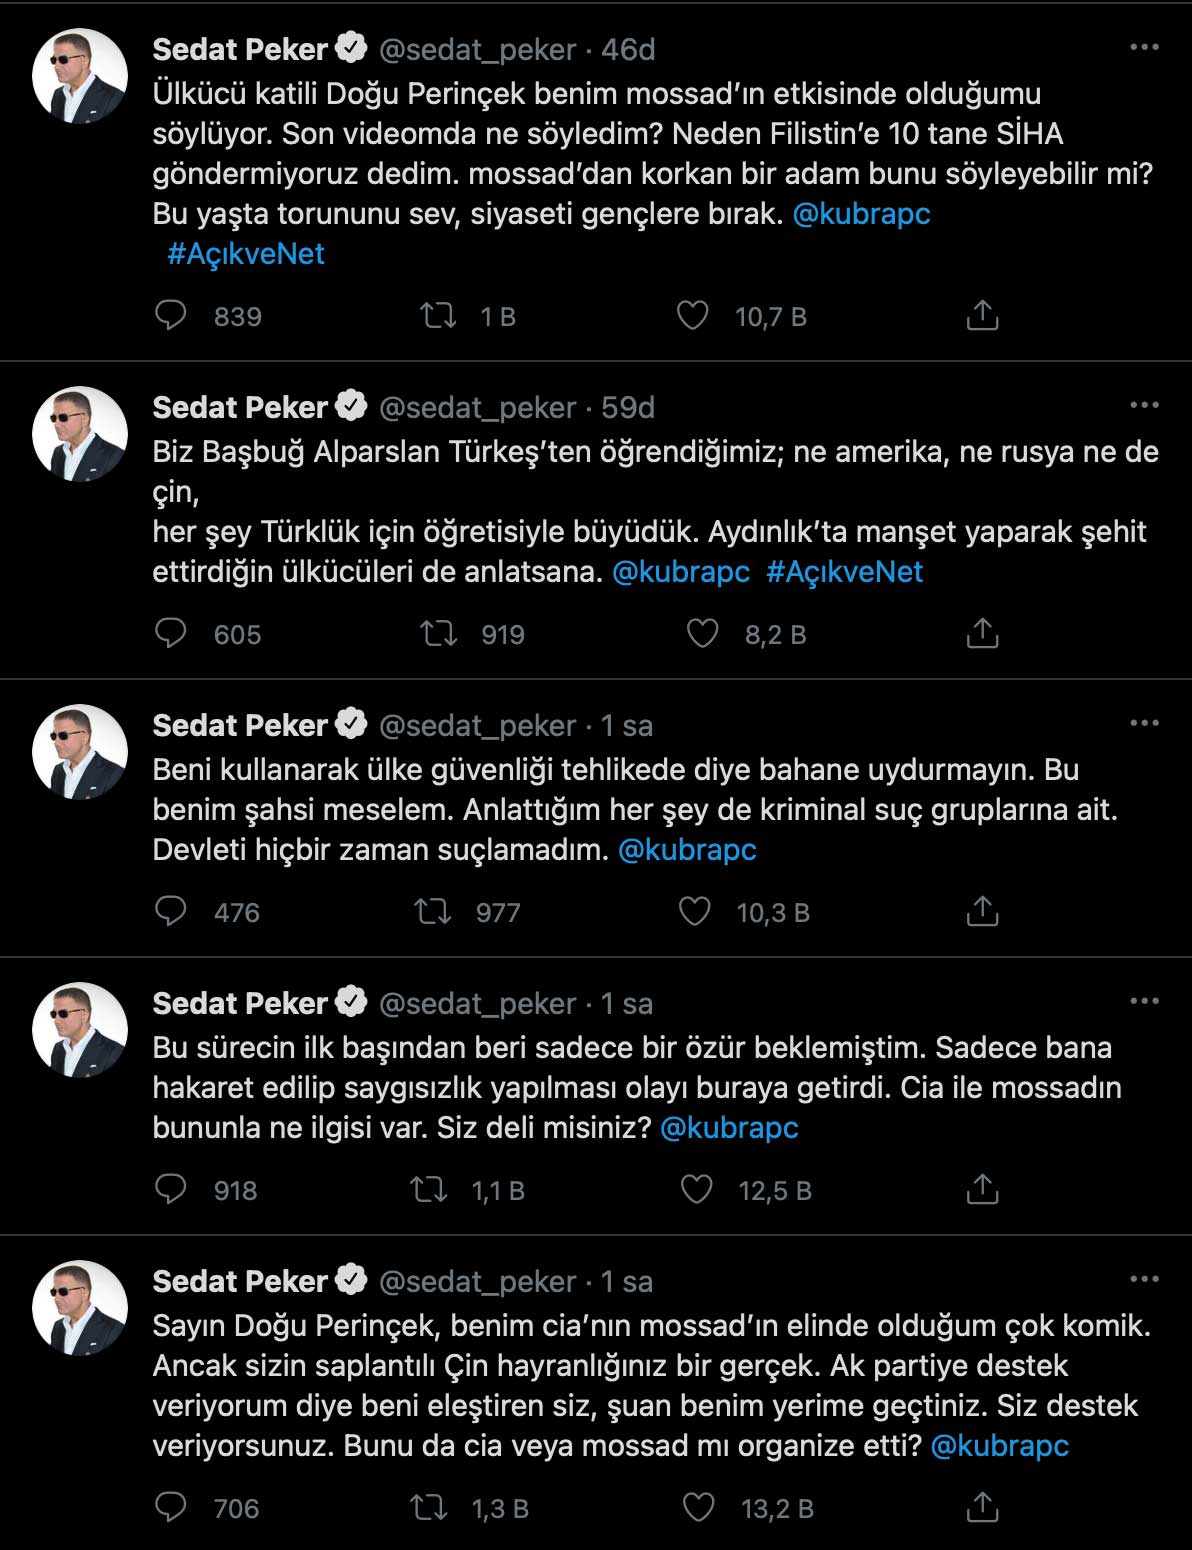 Sedat Peker: Sadece özür beklemiştim; bana hakaret edilip saygısızlık yapılması olayı buraya getirdi